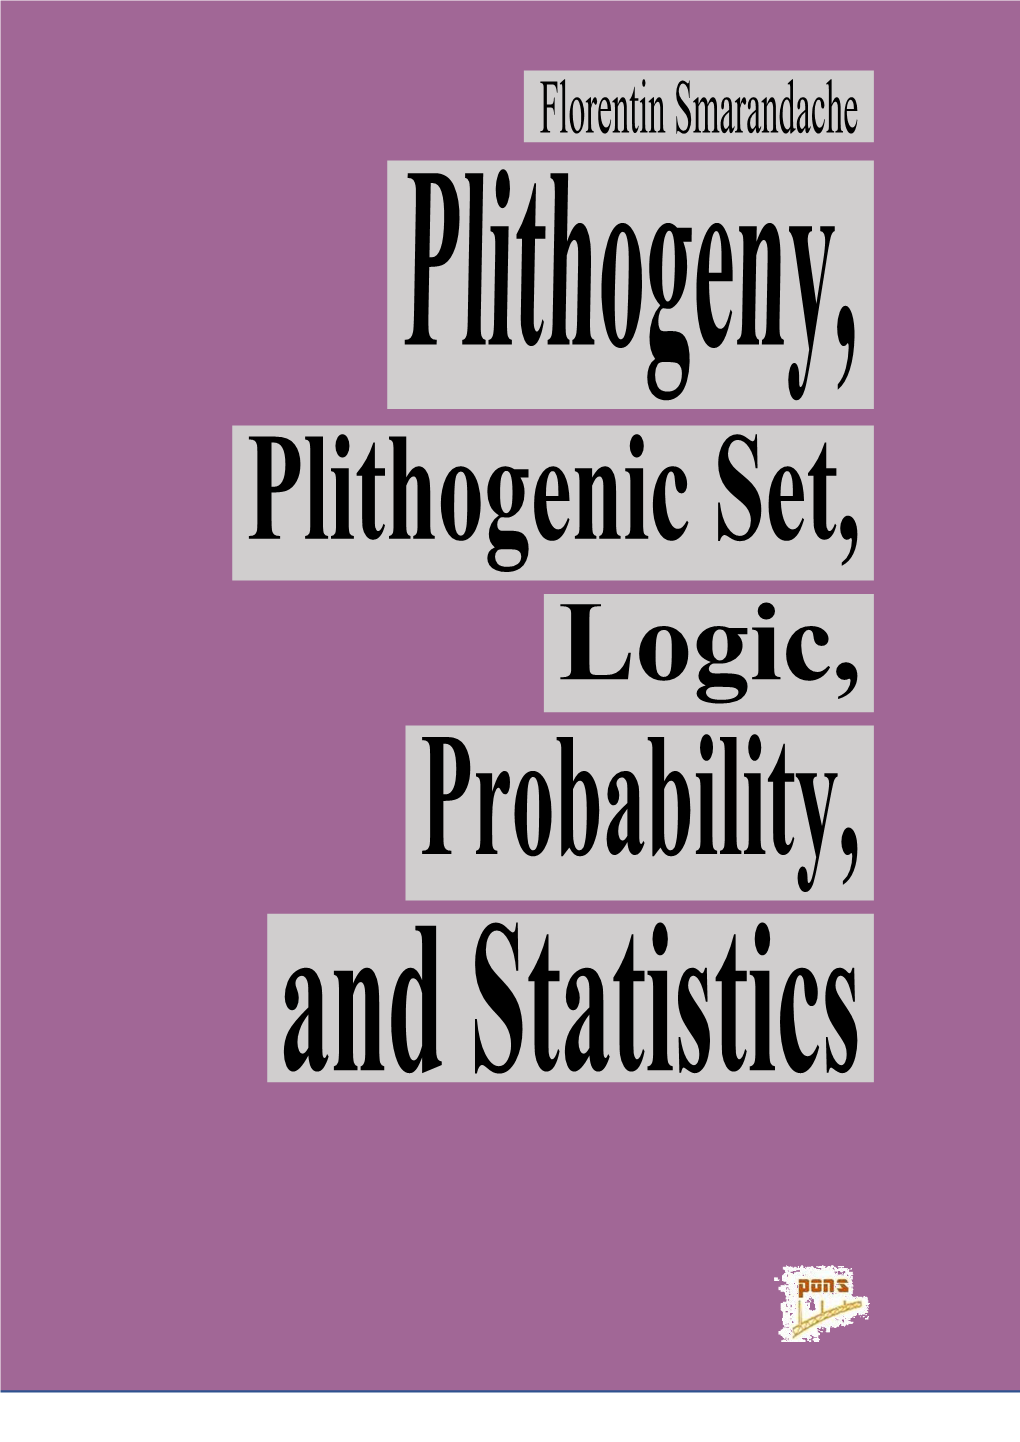 Plithogeny, Plithogenic Set, Logic, Probability, and Statistics